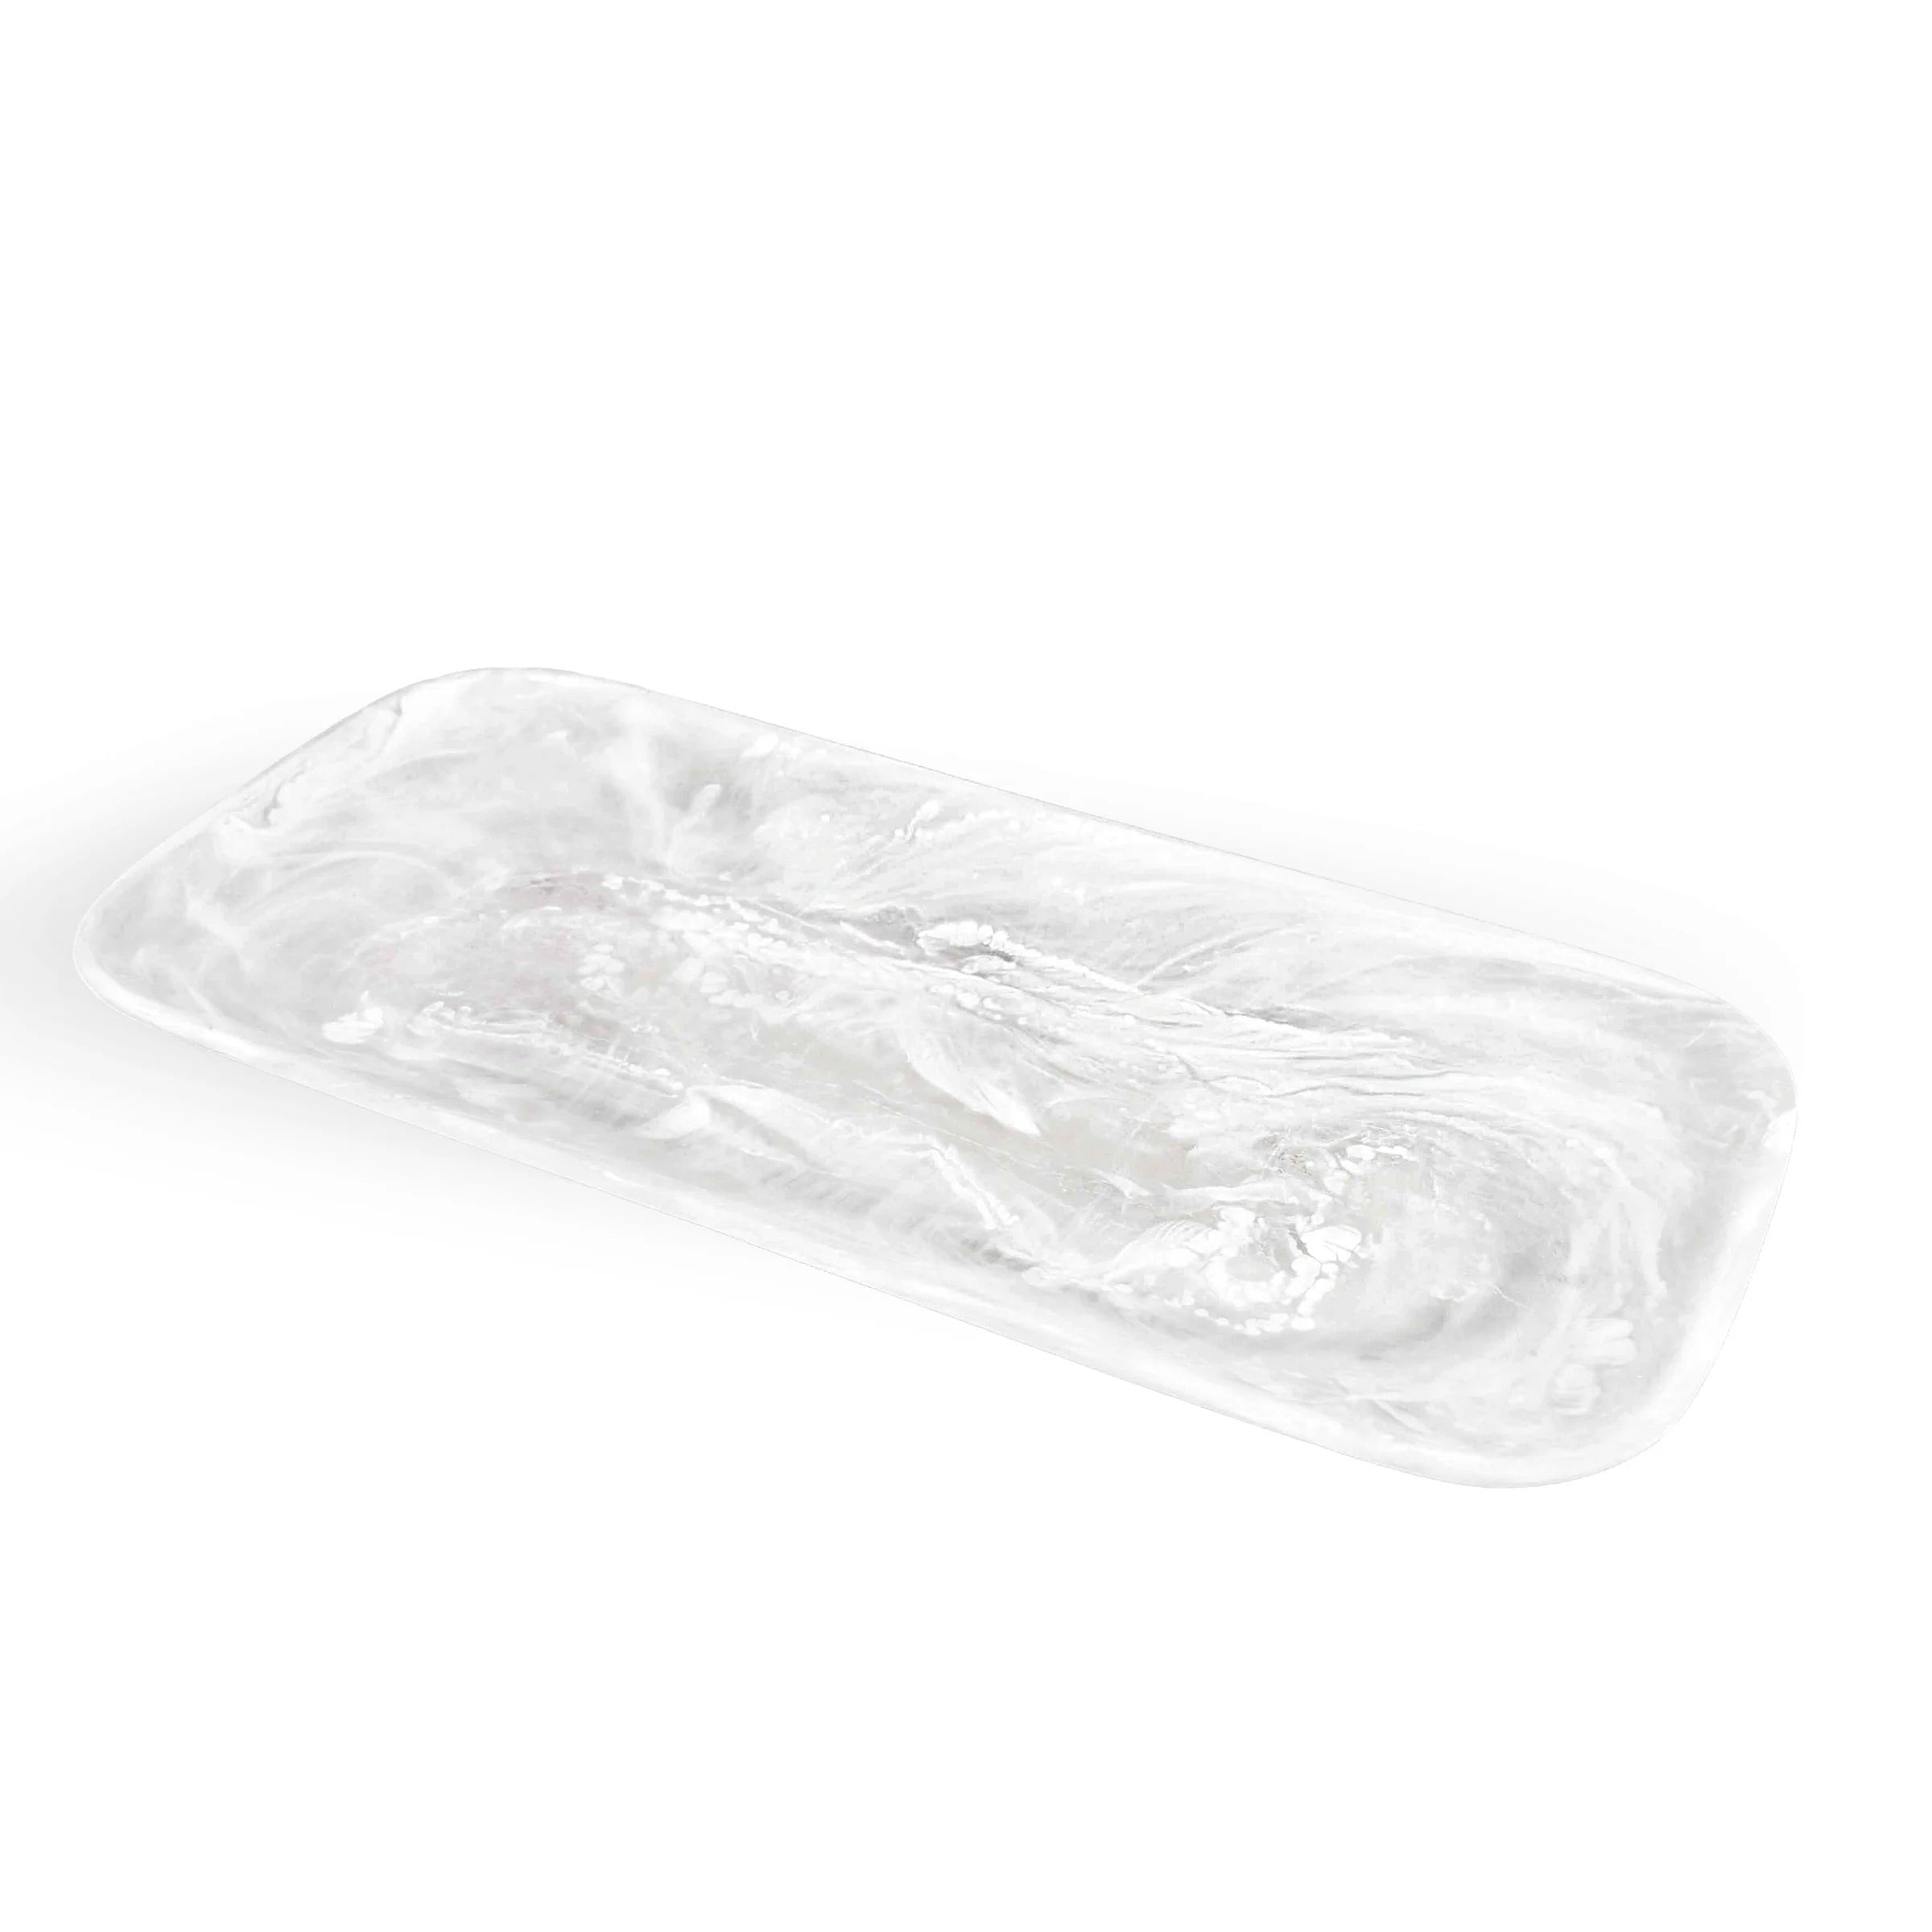 Rectangle Resin Platter - White Swirl